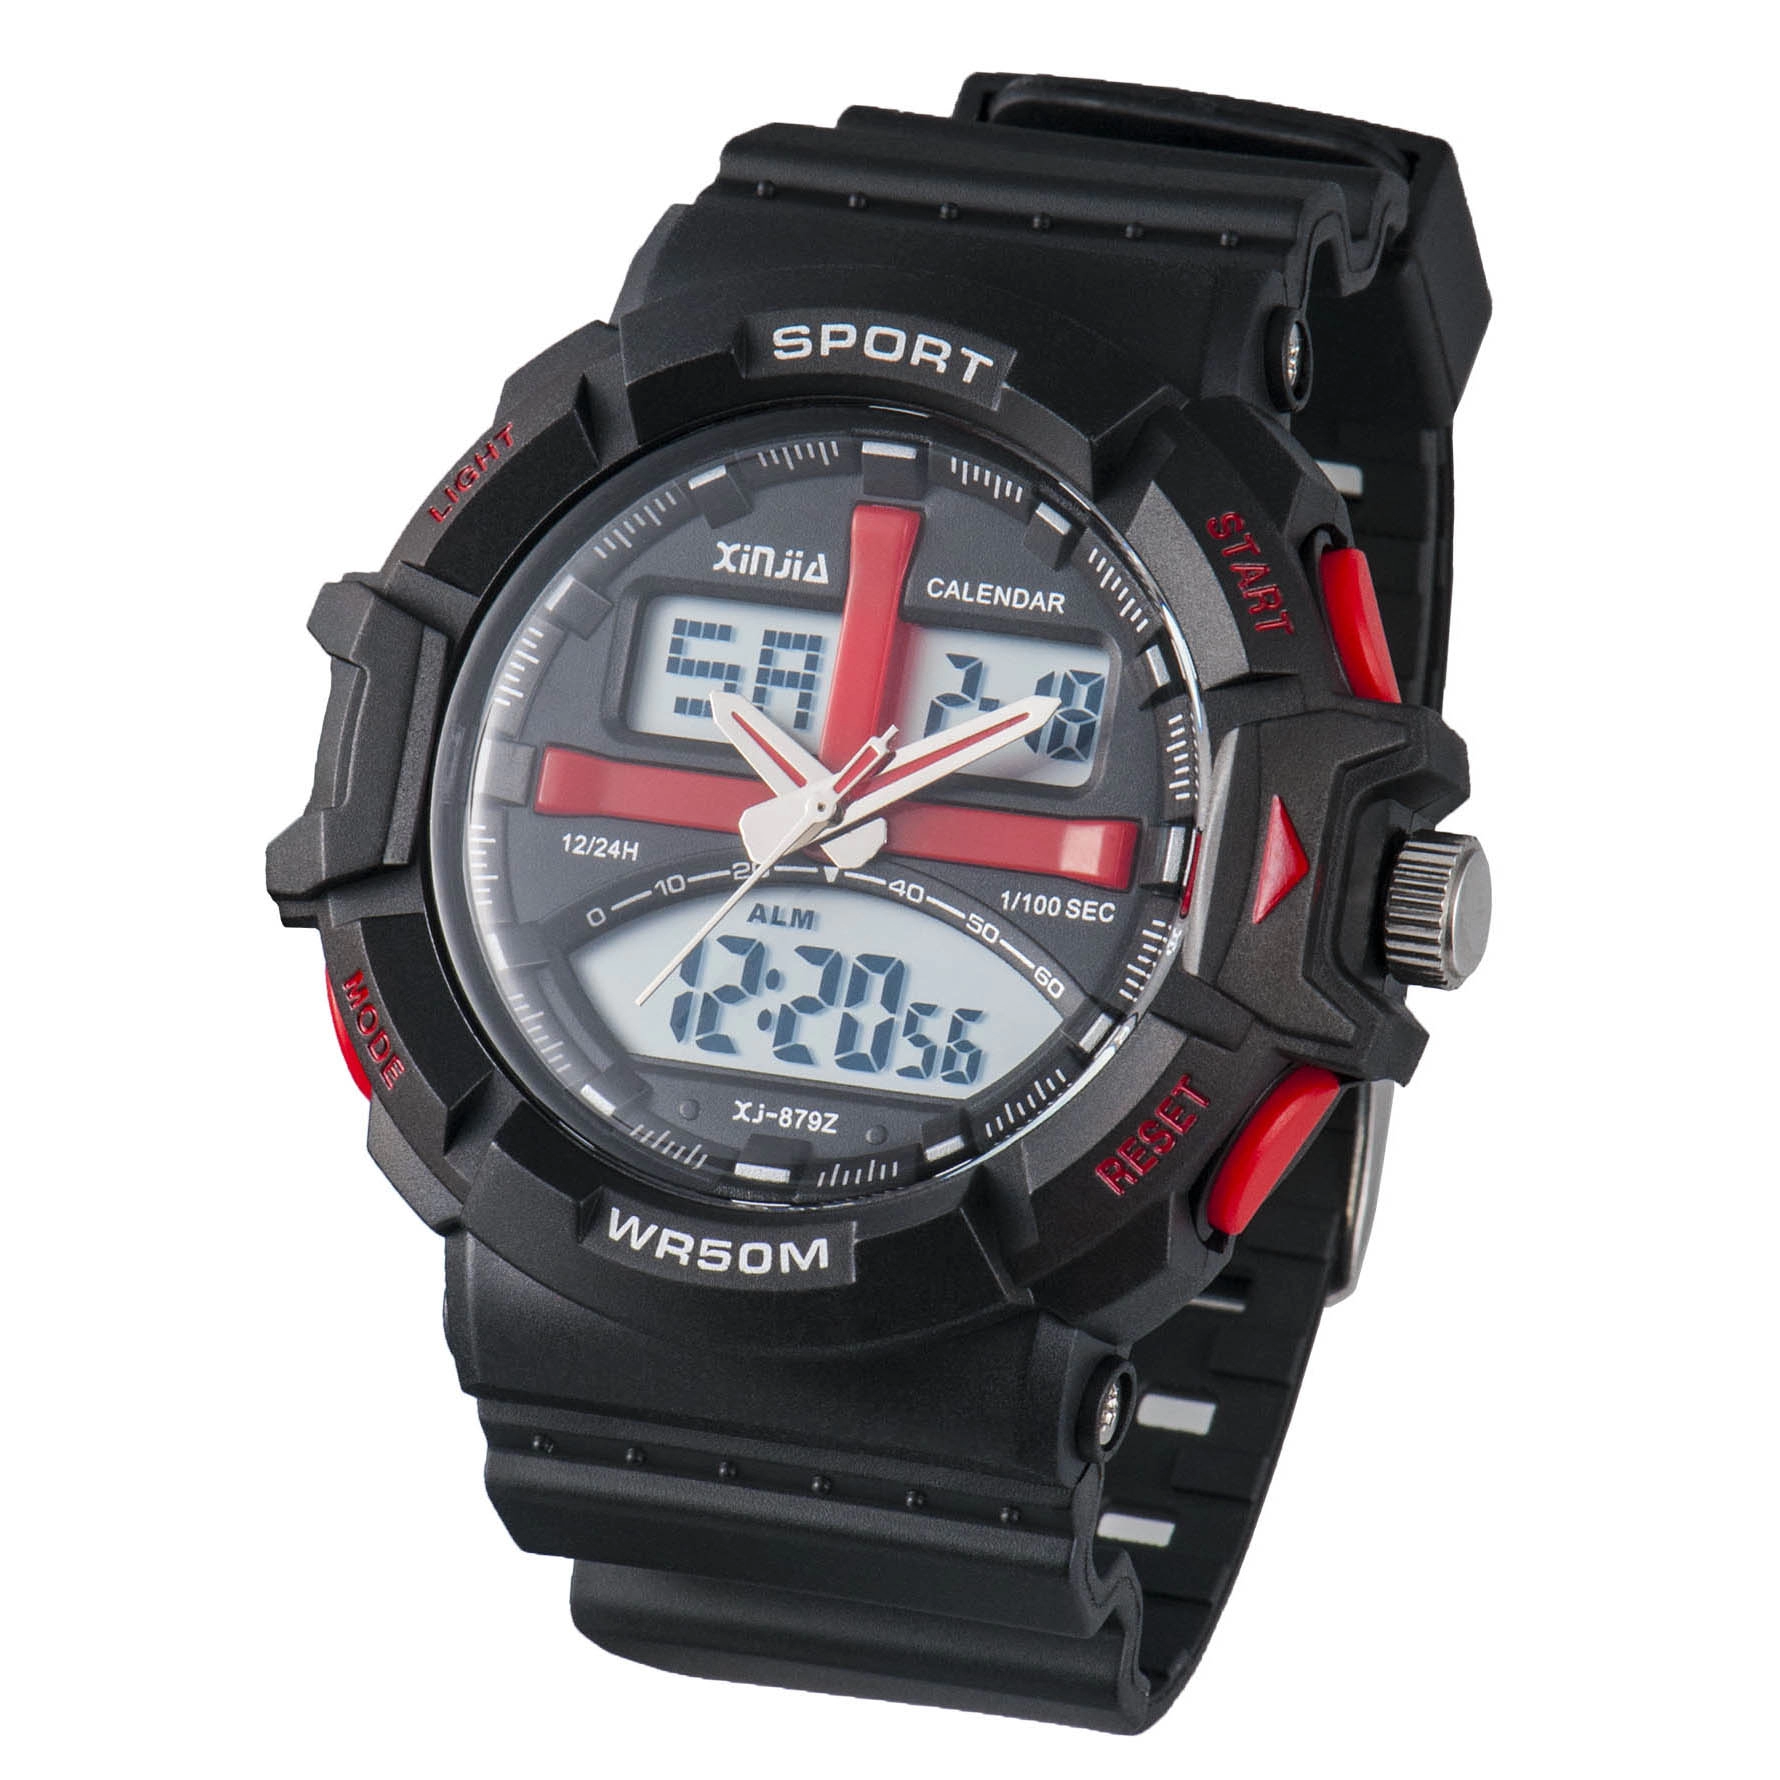 Waterproof Analog-Digital Wrist Watch In Promotion